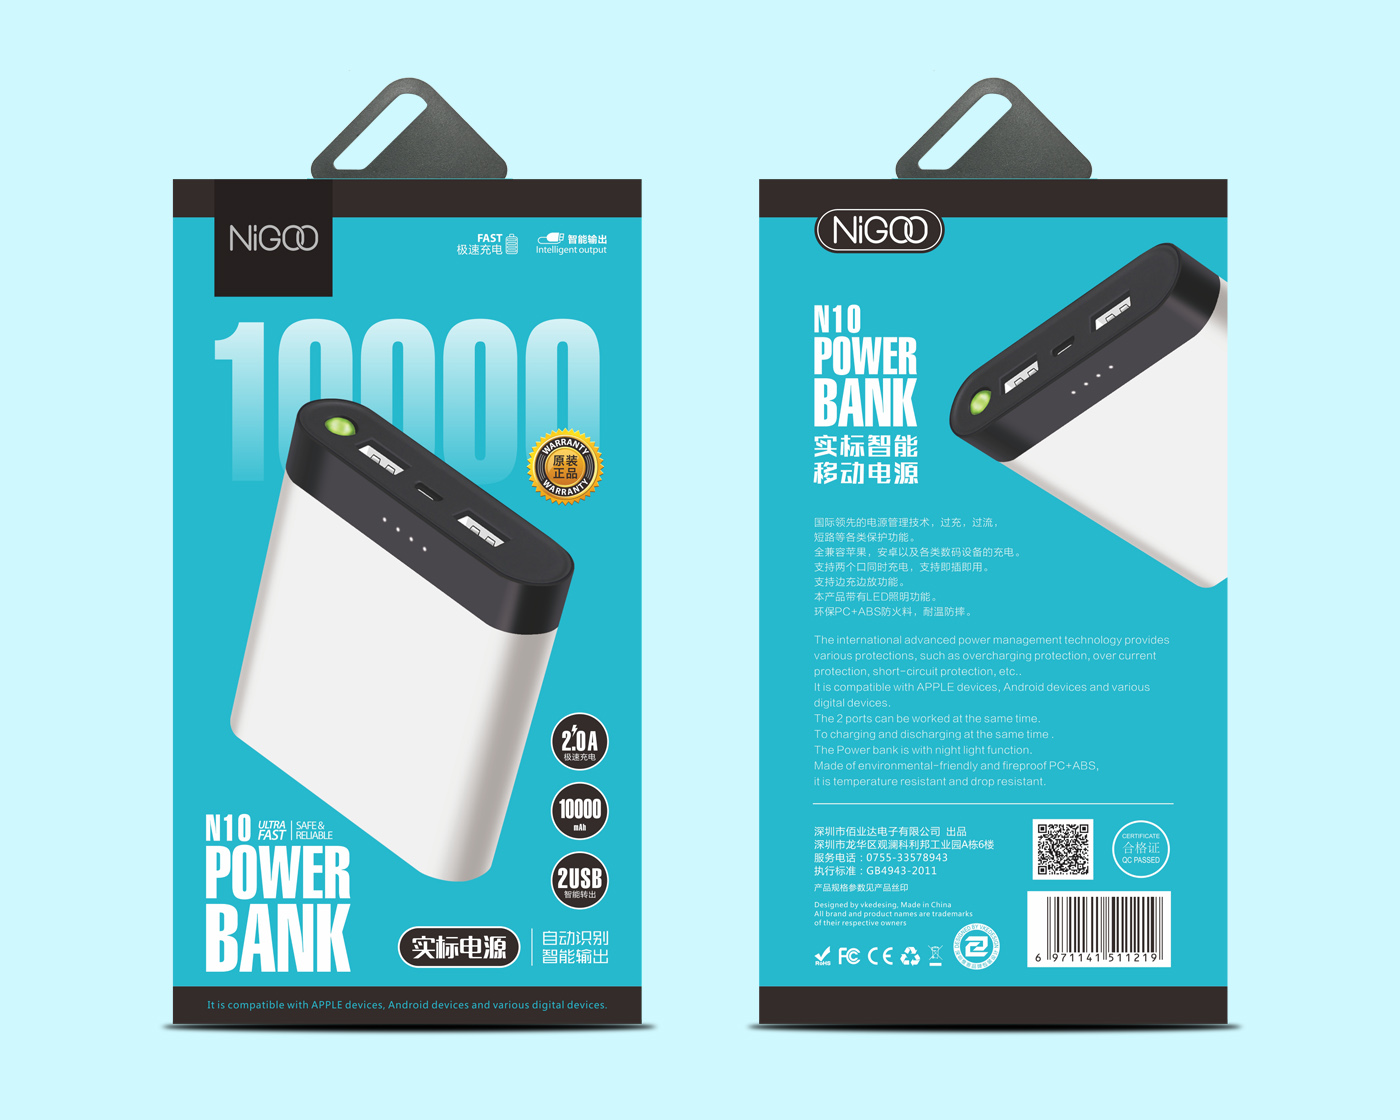 NIGOO Power bank packing design